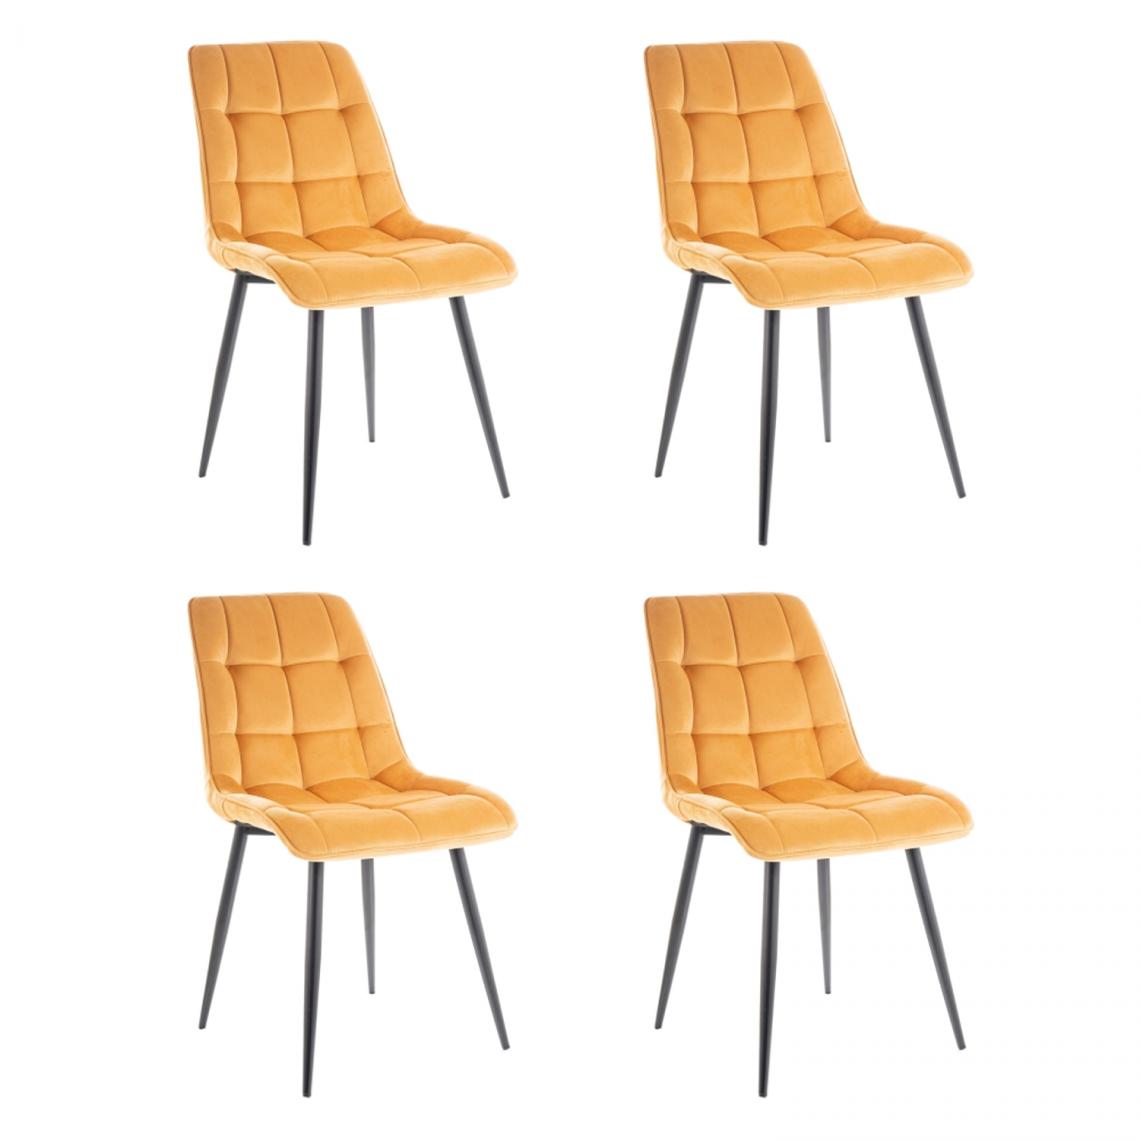 Hucoco - CHIM - Lot de 4 chaises matelassées salle à manger - 89x51x44 cm - Tissu velouté - Pieds en métal - Jaune - Chaises